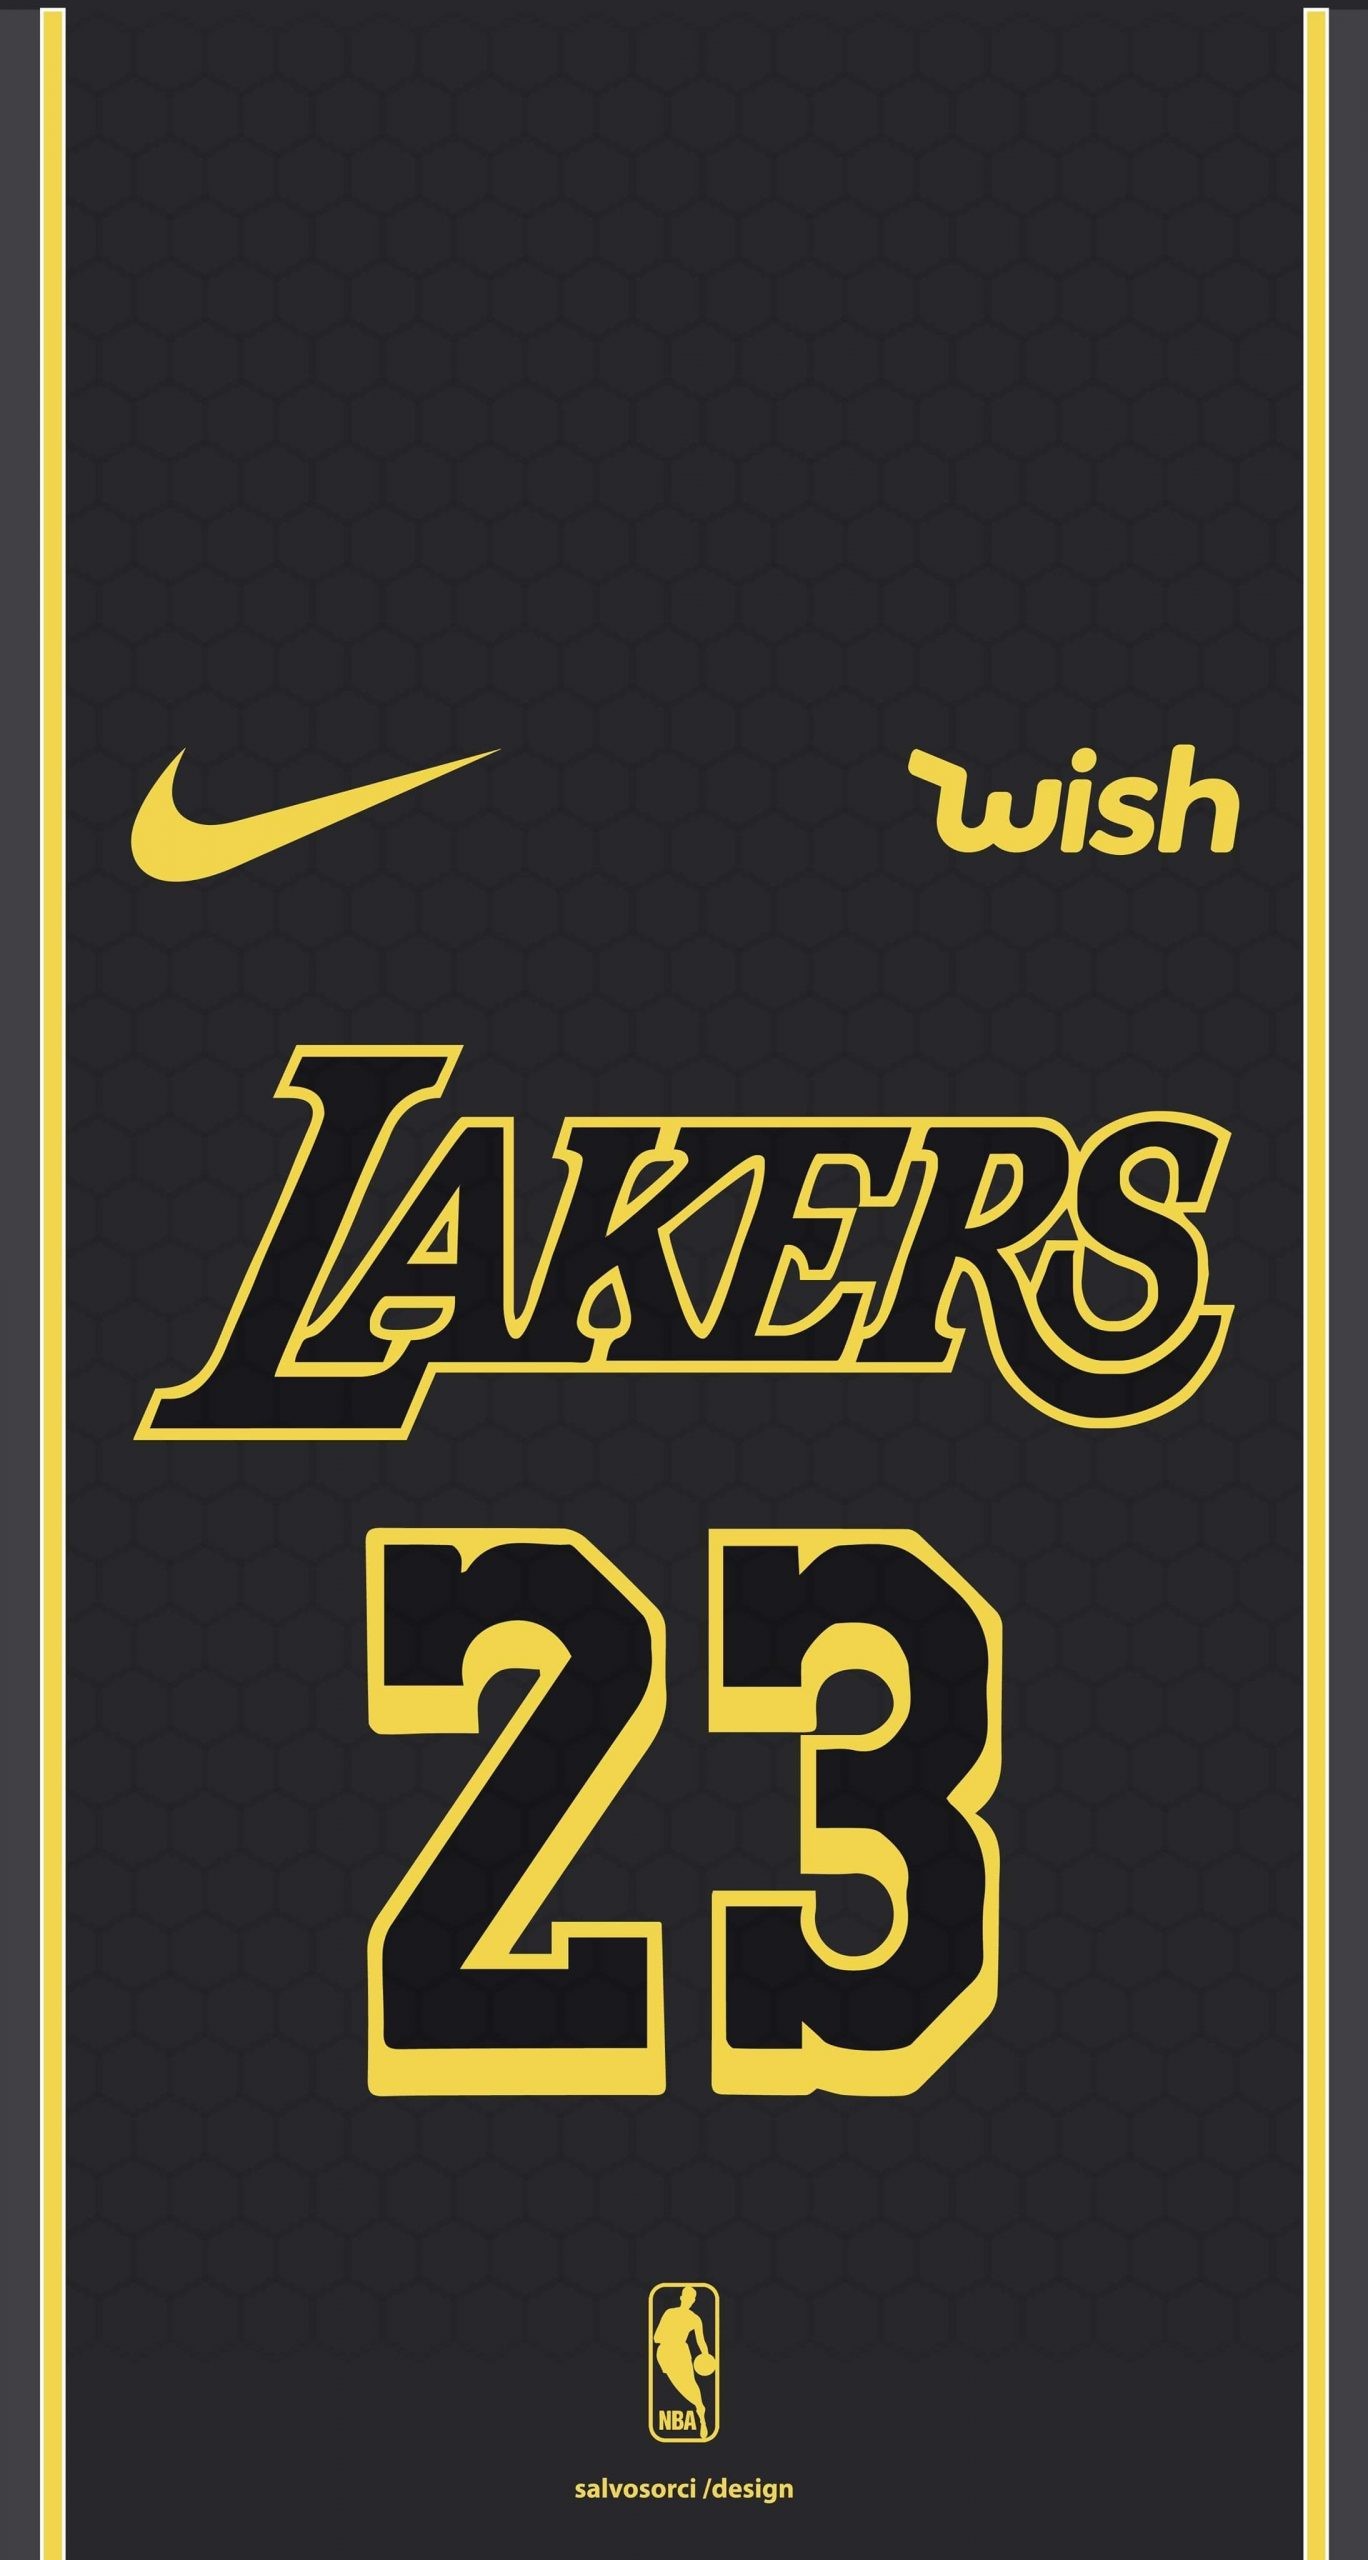 Lakers Wallpaper 2020 - EnWallpaper